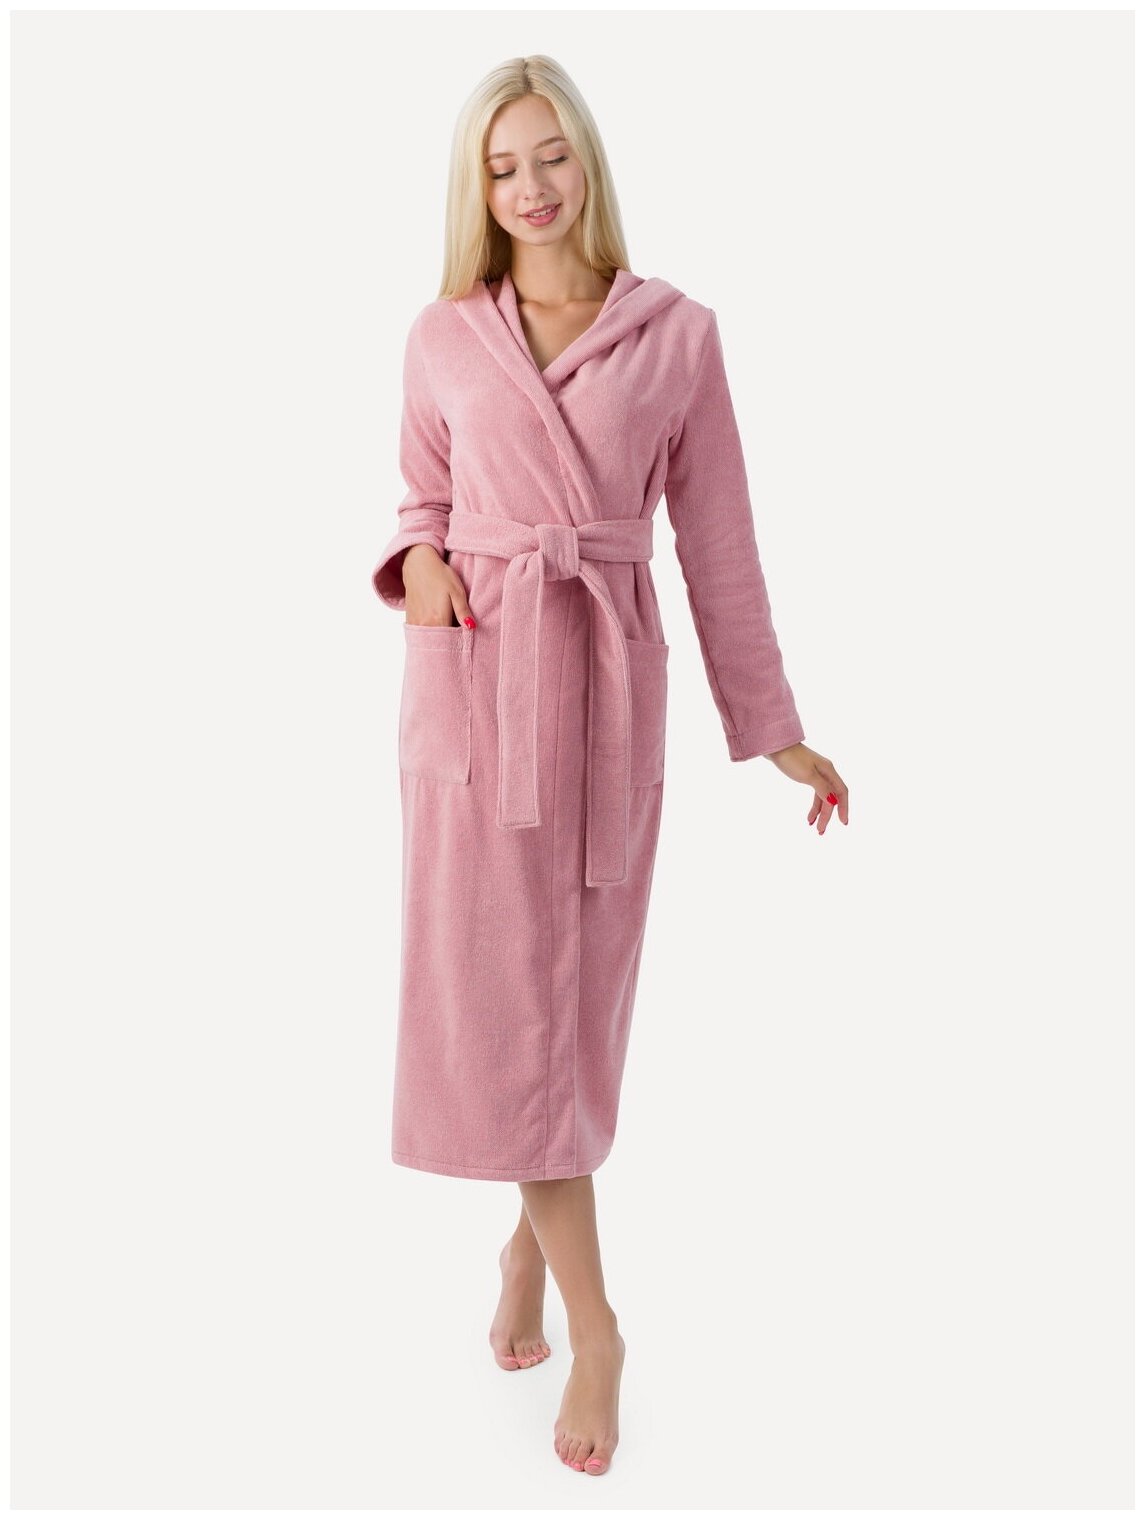 Женский халат с капюшоном, пудрово-розовый - фотография № 1